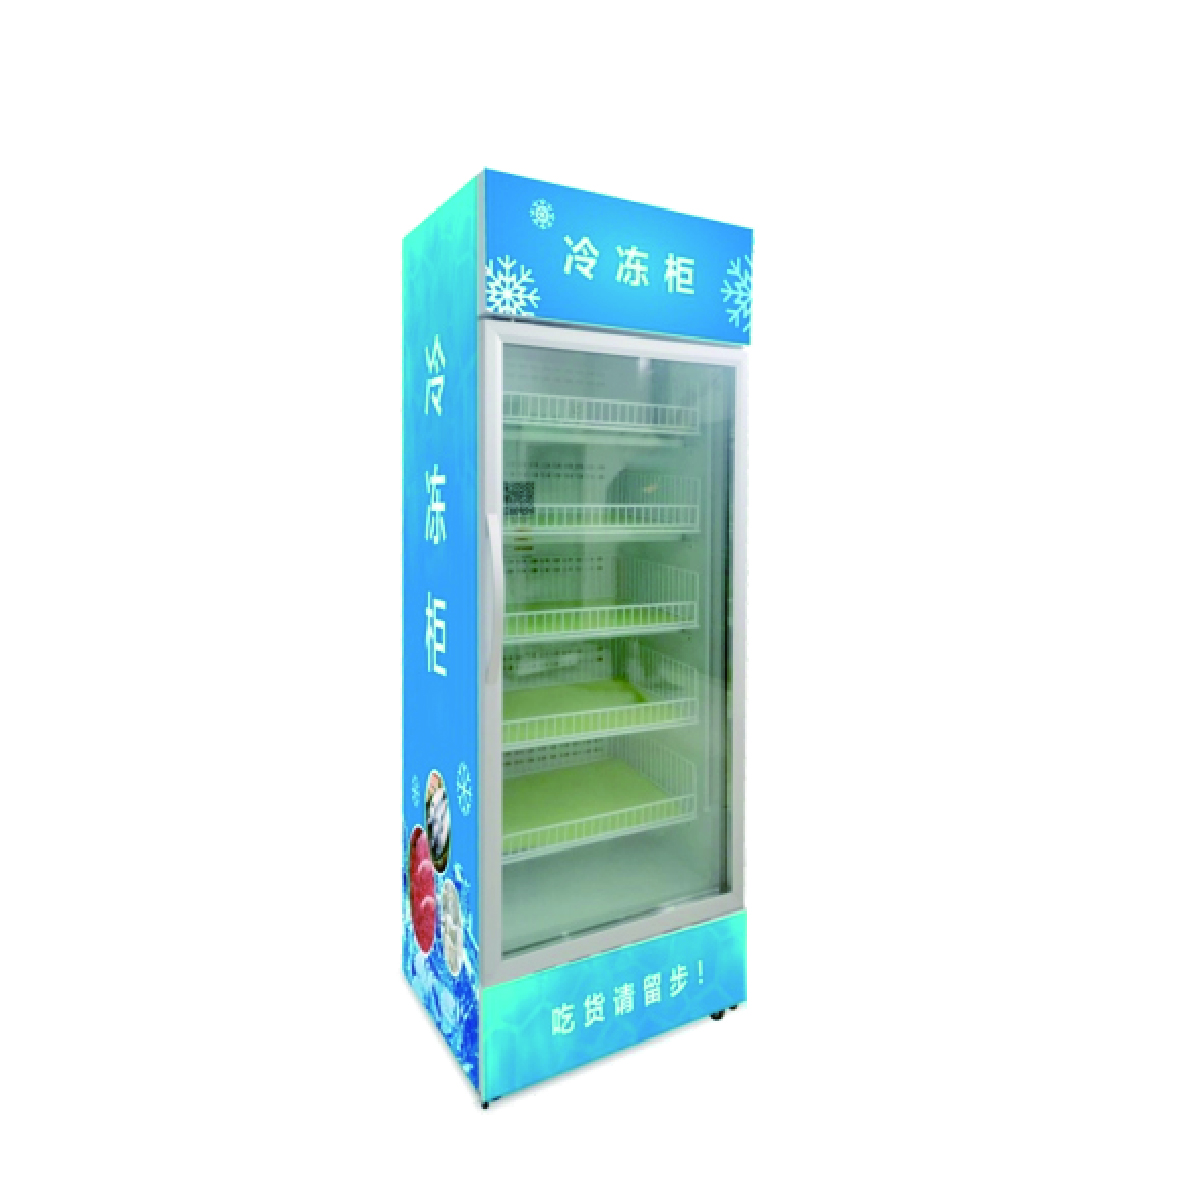 Vending machine ACVM-520LF-A